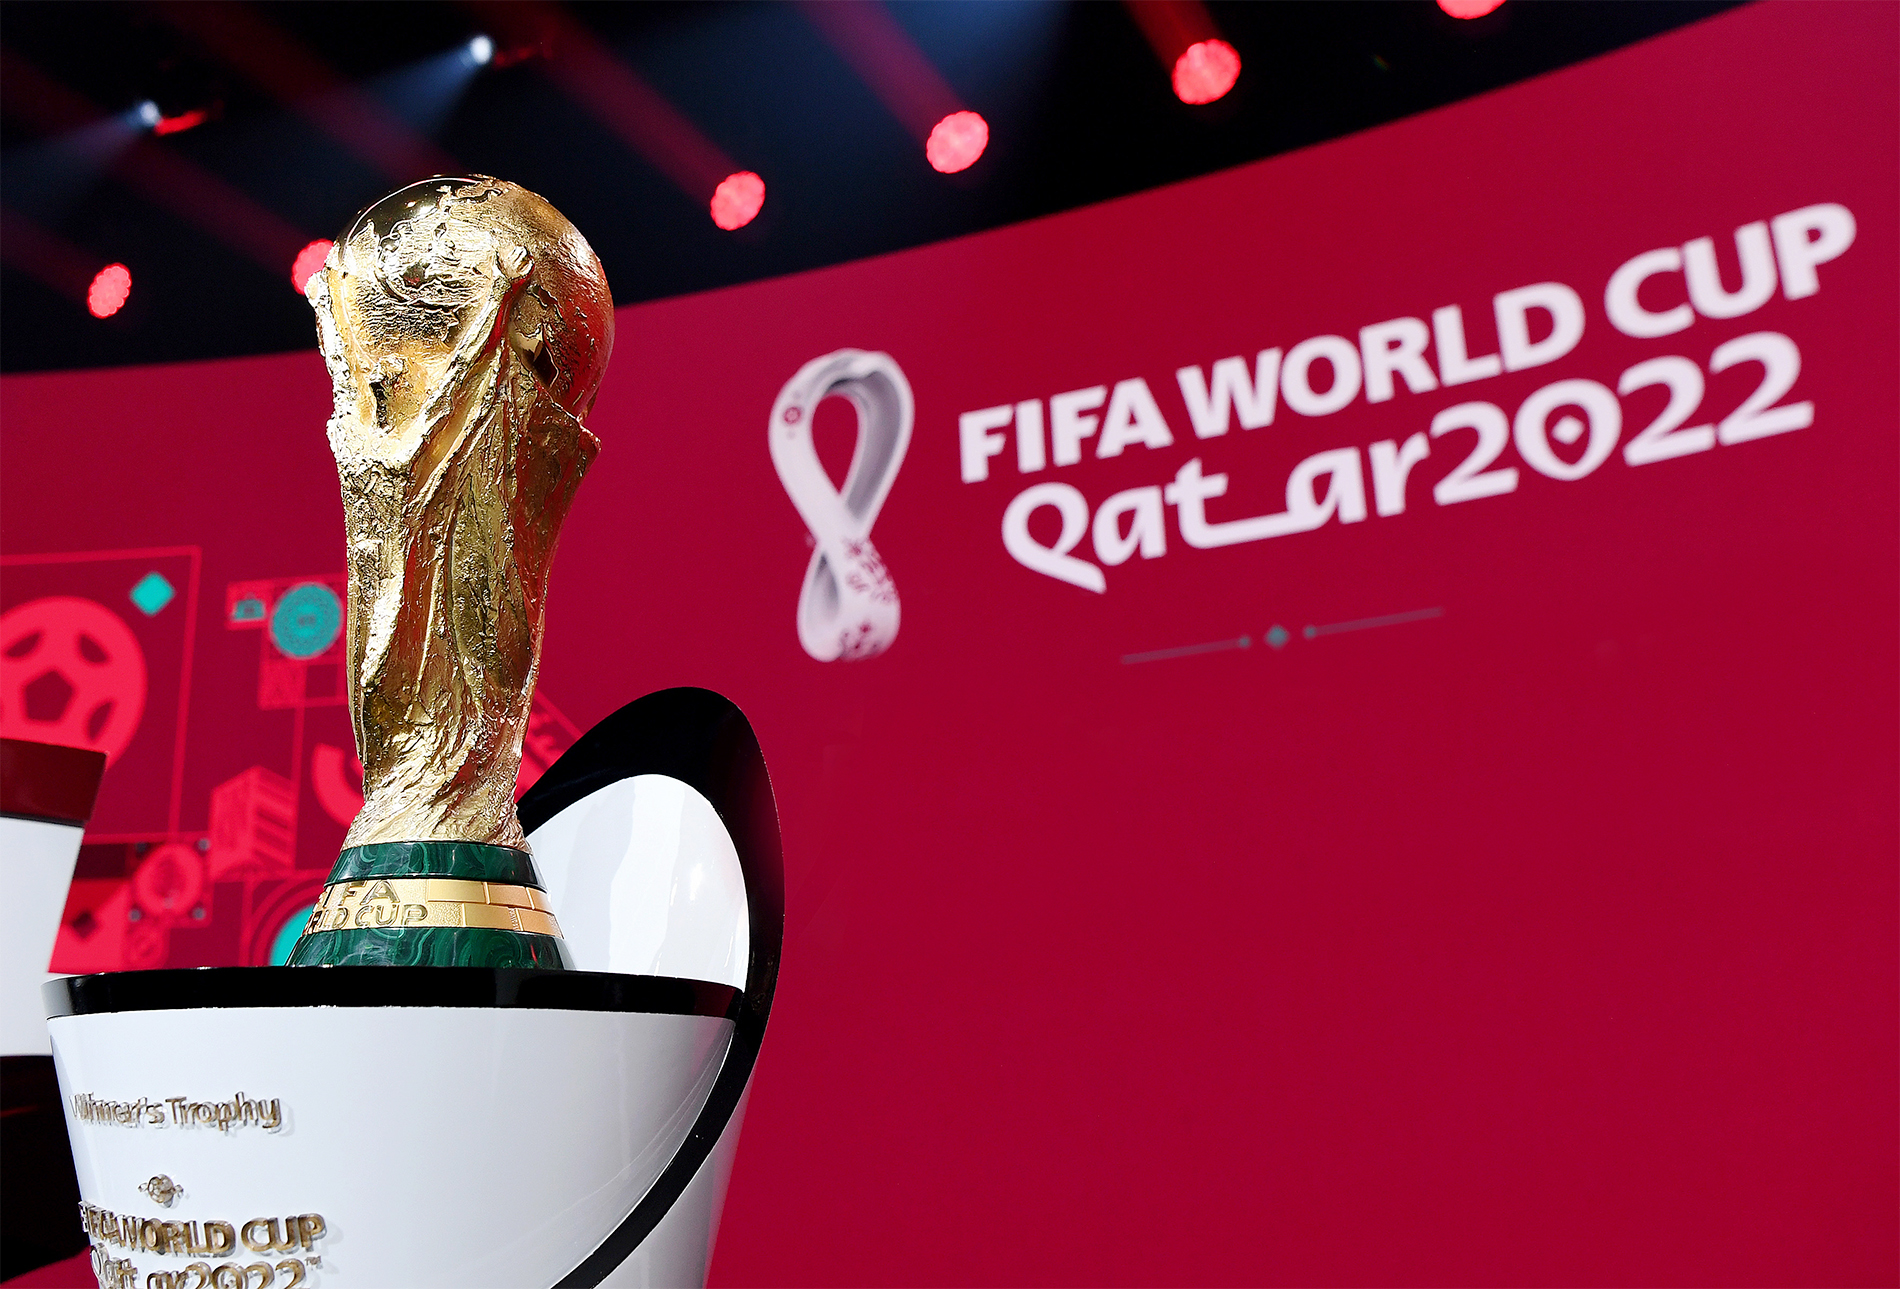 Vui World Cup: Đừng bỏ lỡ cơ hội thưởng thức những trận đấu hấp dẫn tại World Cup 2022 cùng Vui World Cup! Cảm nhận niềm đam mê bóng đá truyền thống với những câu hỏi, trò chơi, và phần thưởng độc đáo trong sự kiện này.